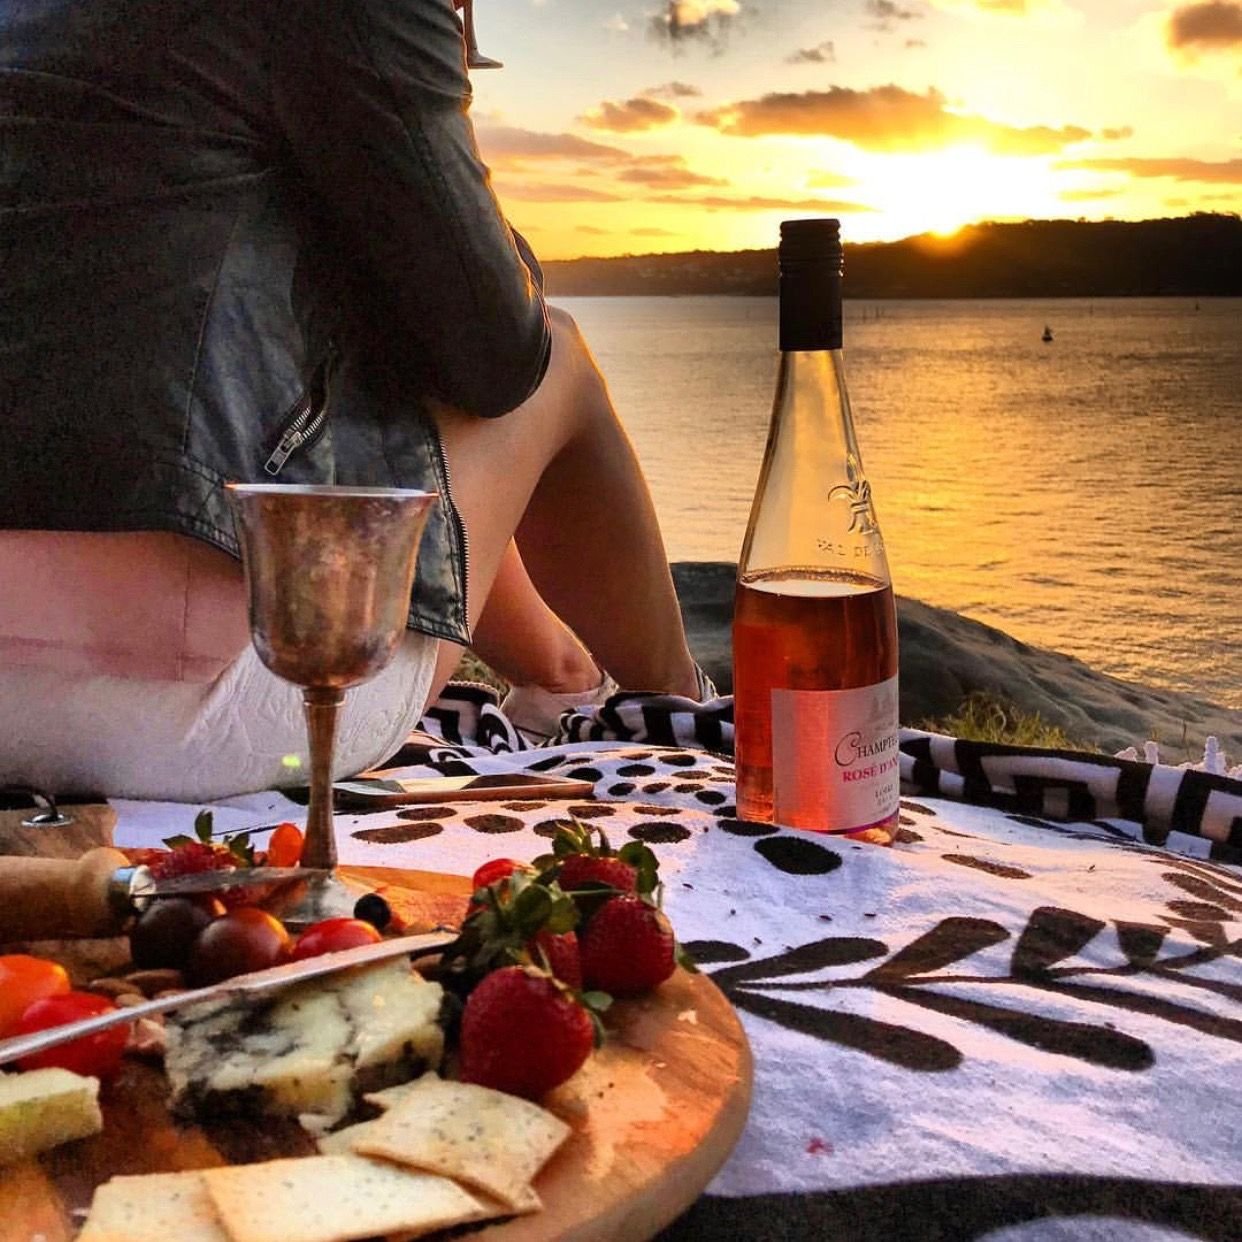 Вечер был вкусным. Романтический ужин на закате. Романтический ужин с вином. Романтический вечер с вином. Вино на берегу моря вечером.